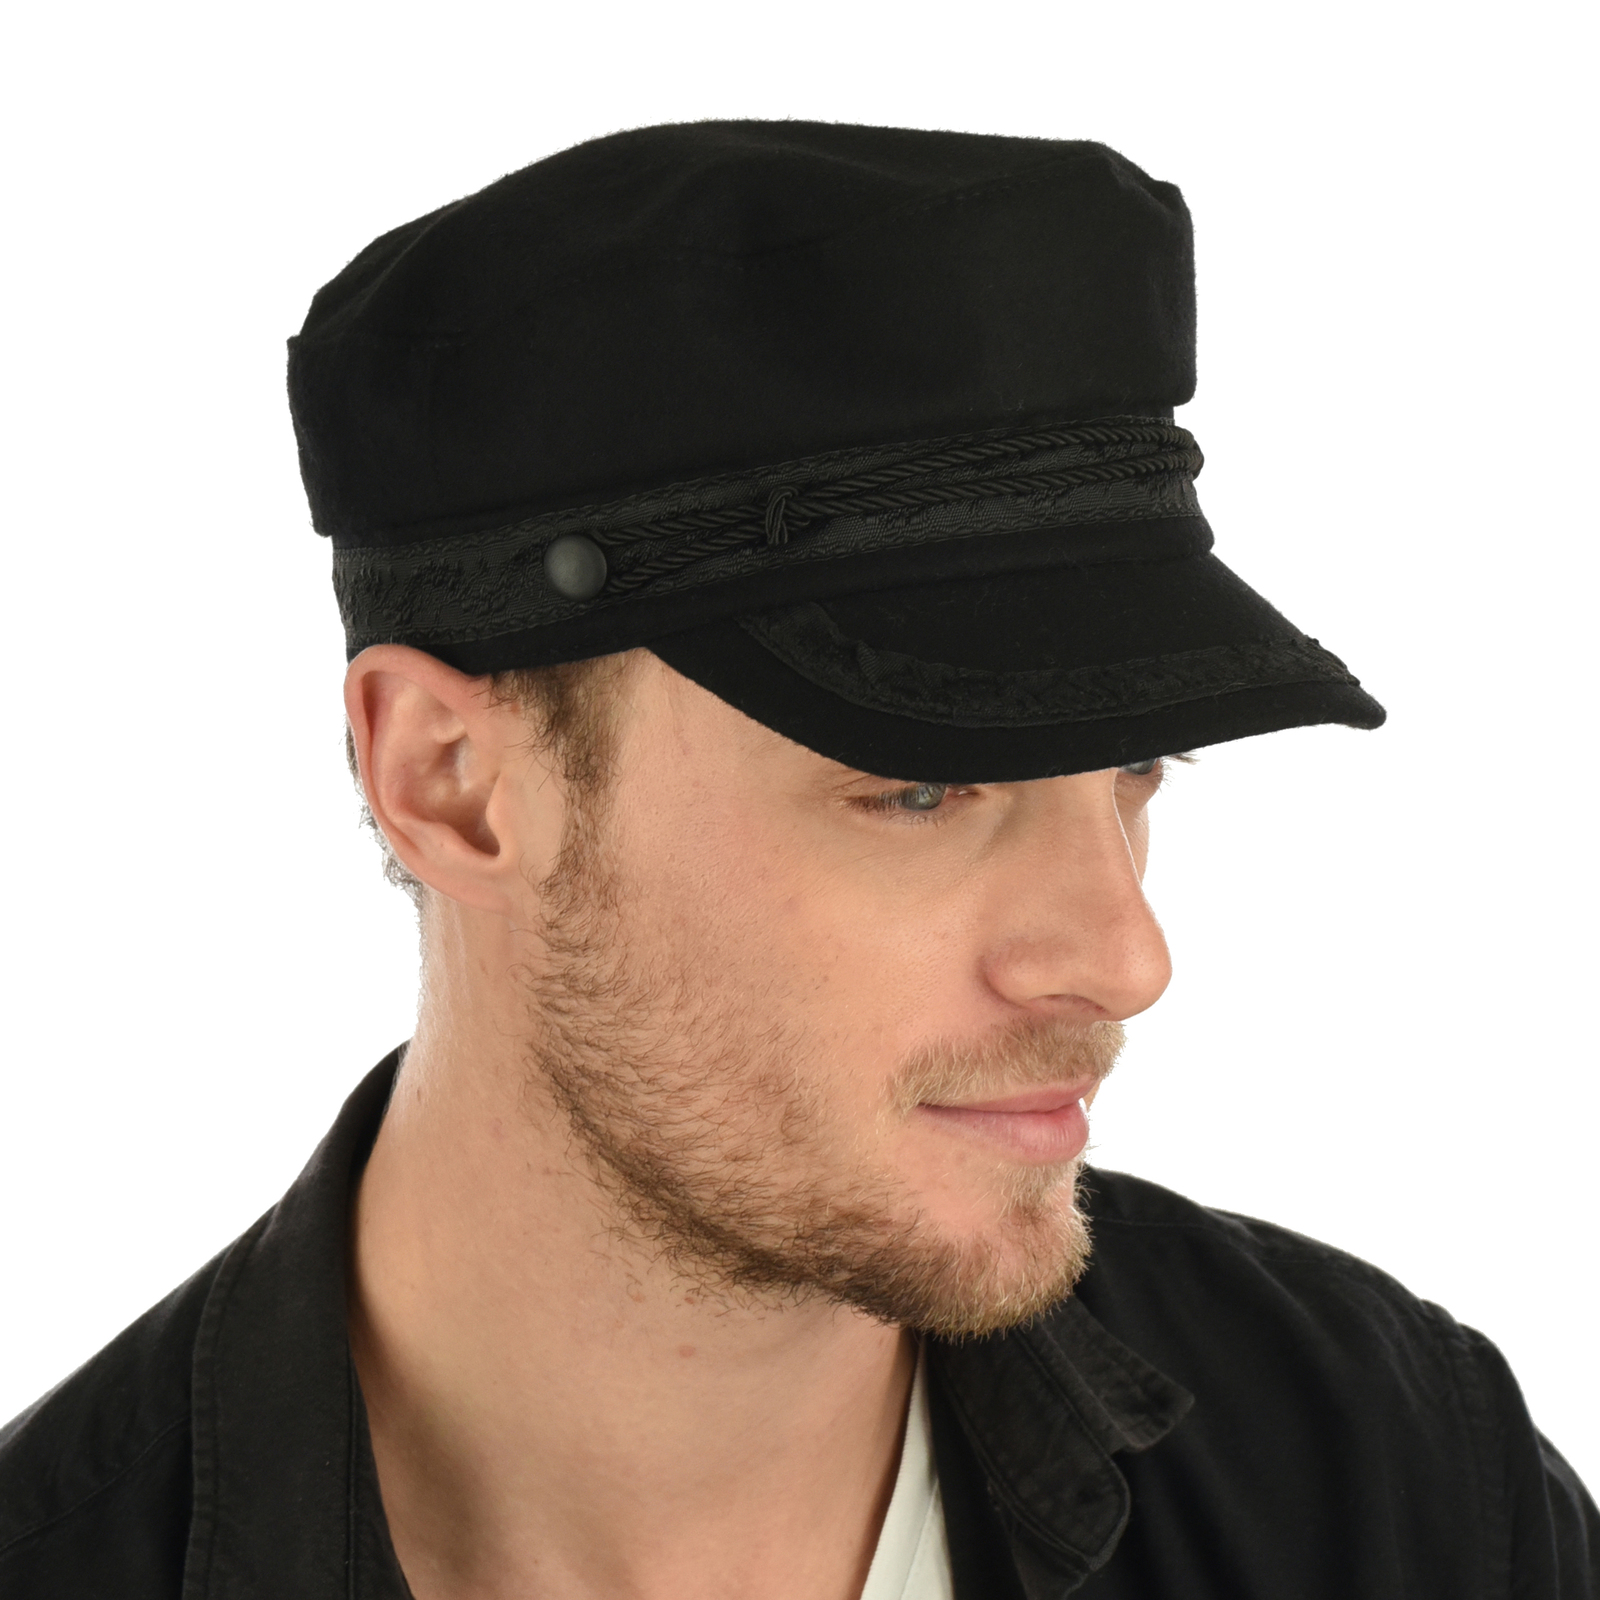 Wool Felt Greek Fisherman Baker Boy Cap Hat Black John Lennon